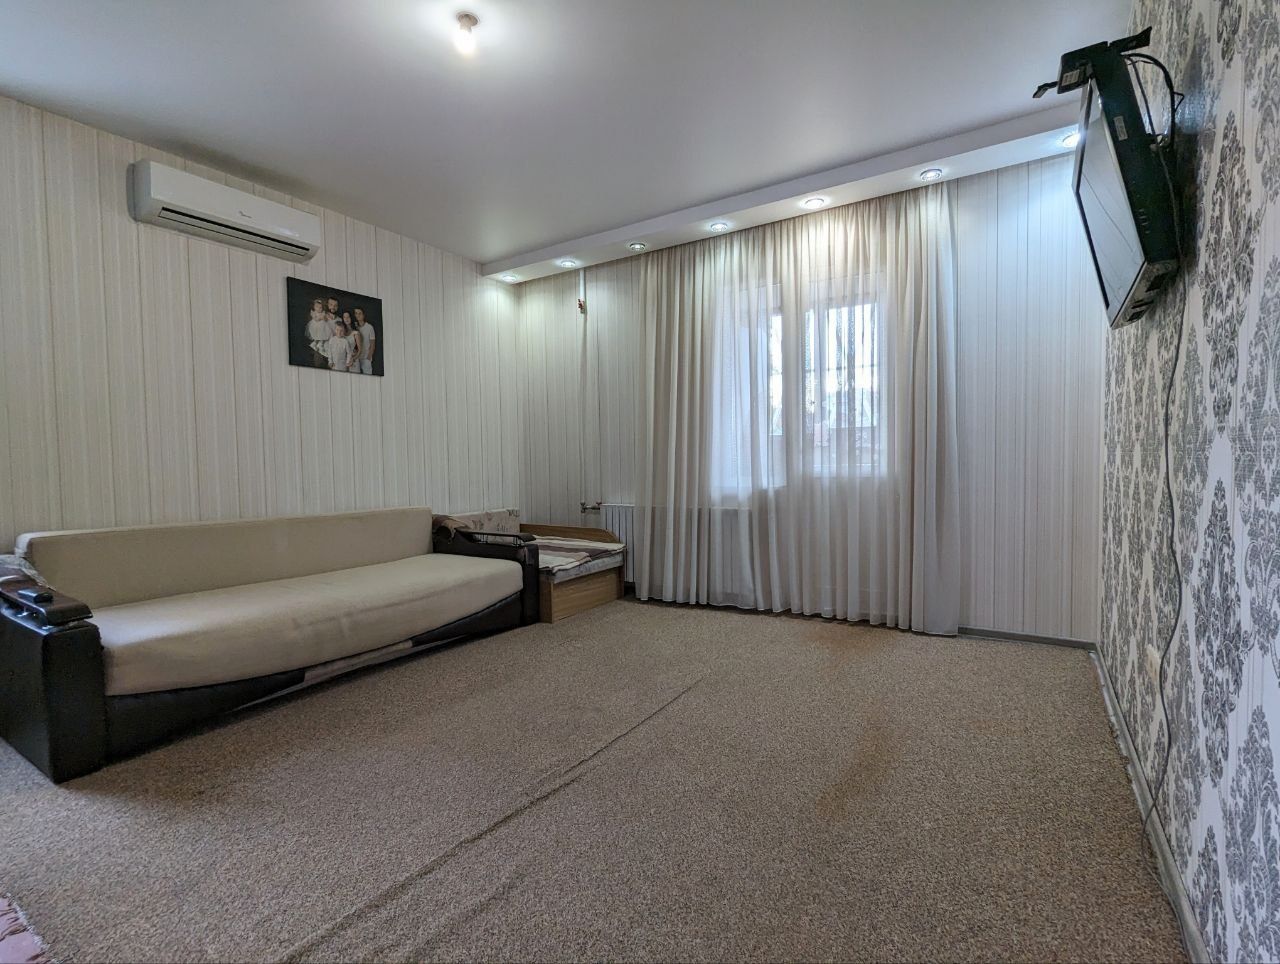 Продам 1-комнатную квартиру на Таирова (Вузовский) сотовый проект.